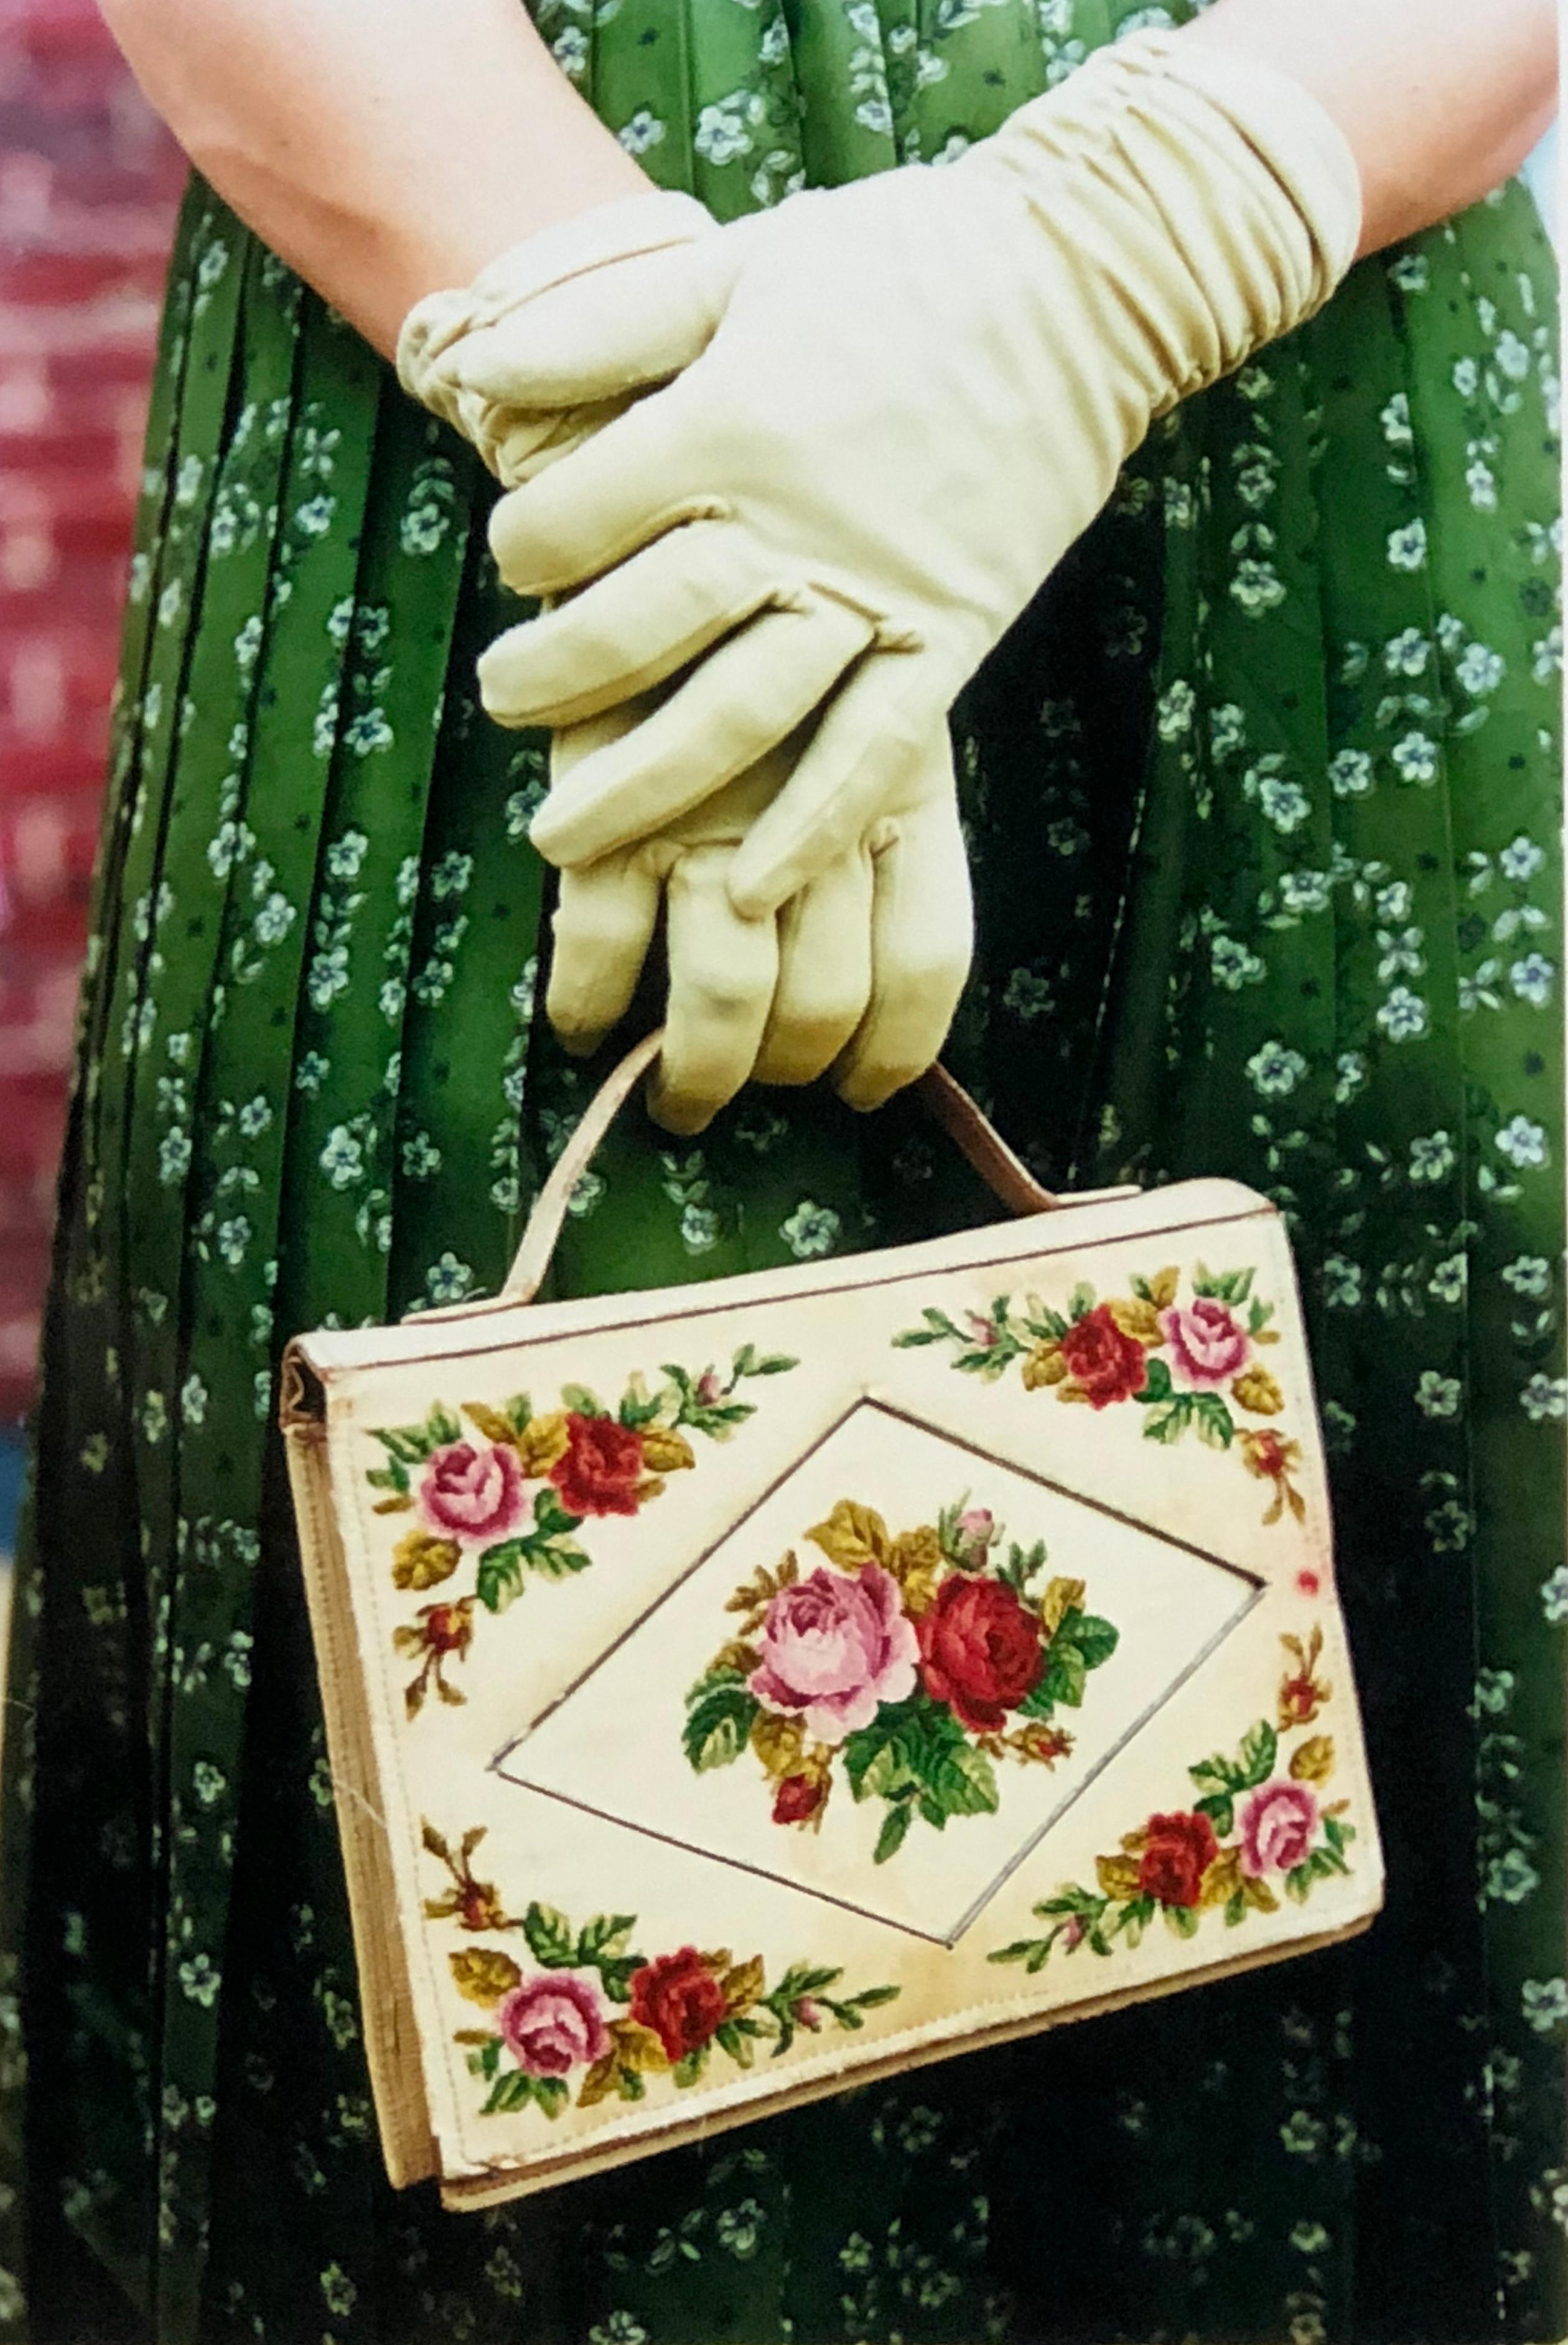 Handschuhe und Handtasche, Goodwood, Chichester - Feminine Mode, Farbfotografie